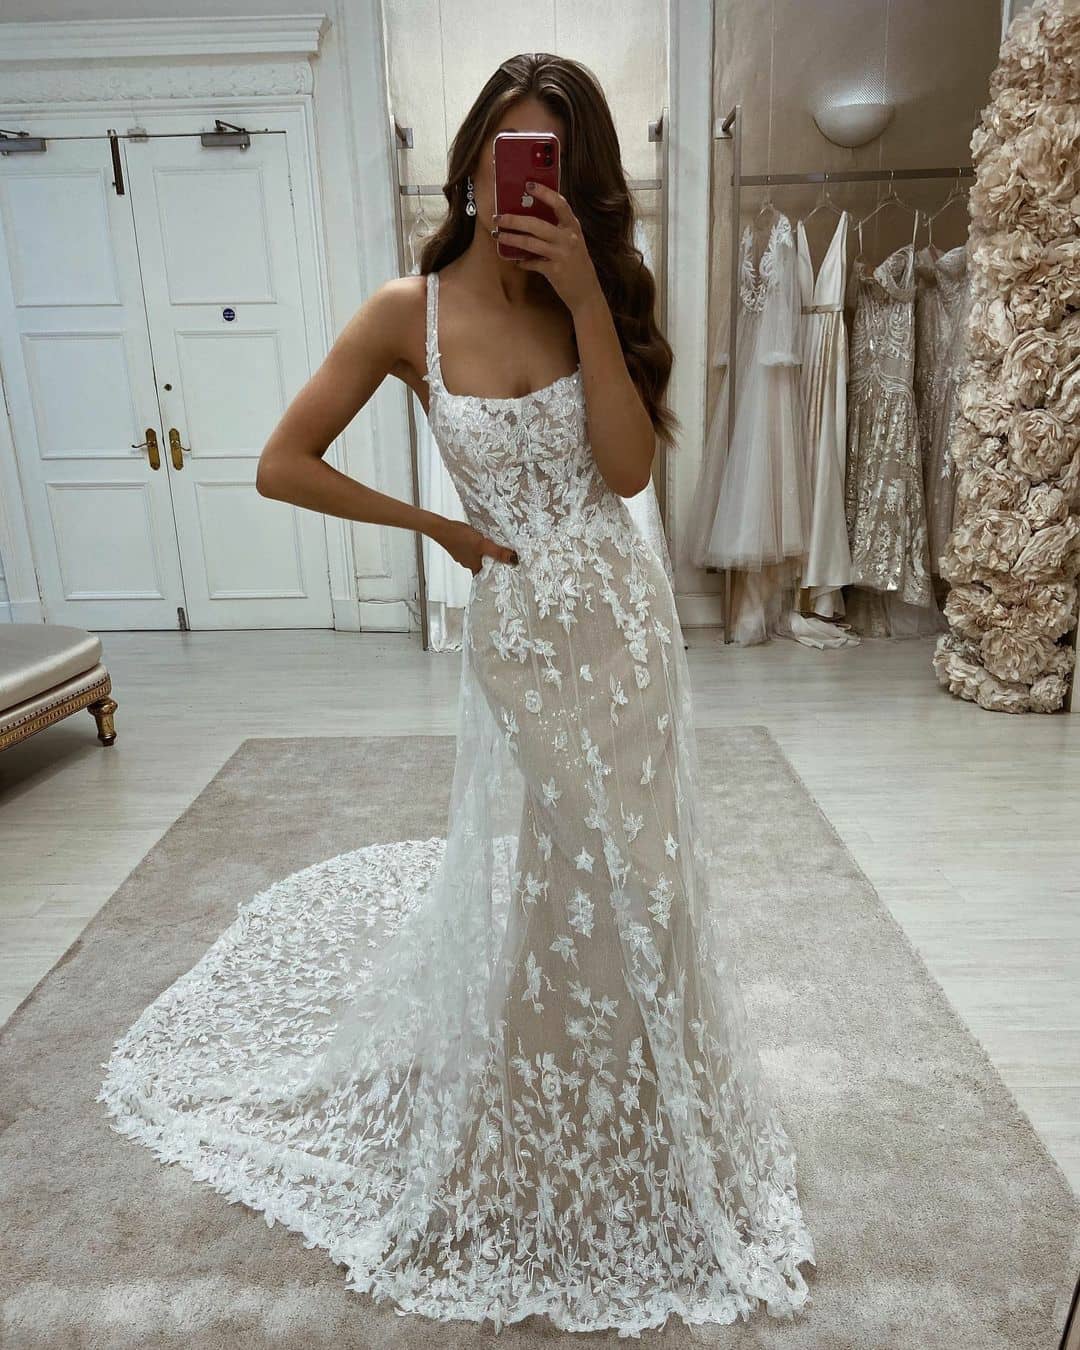 Na naszej WYPRZEDAŻY znajdziecie prawdziwe perełki ⚪ tak jak ta zjawiskowa suknia z kolekcji MARTINA LIANA, model ML1330 
Suknia jest jeszcze dostępna! 😍
▪︎ Rozmiar 38
▪︎ Kolor: Ivory / Honey (tak jak na zdjęciu)
W cenie wyprzedażowej dostępna tylko 1 sztuka!
.
.
.
Reg. @eleganzasposa_
.
.
.
.
.
#weddingdress #weddinggown #bride #bridal #laceweddingdress #sale #saletime #wyprzedaz #slub #wesele #wesele2022 #pannamloda #pannamłoda #suknieślubne #sukniaslubna #sukniaślubna #luxurywedding
#slubneinspiracje #weddinginspo #planowaniewesela  #bridalfashion #bridallook #slubnastylizacja